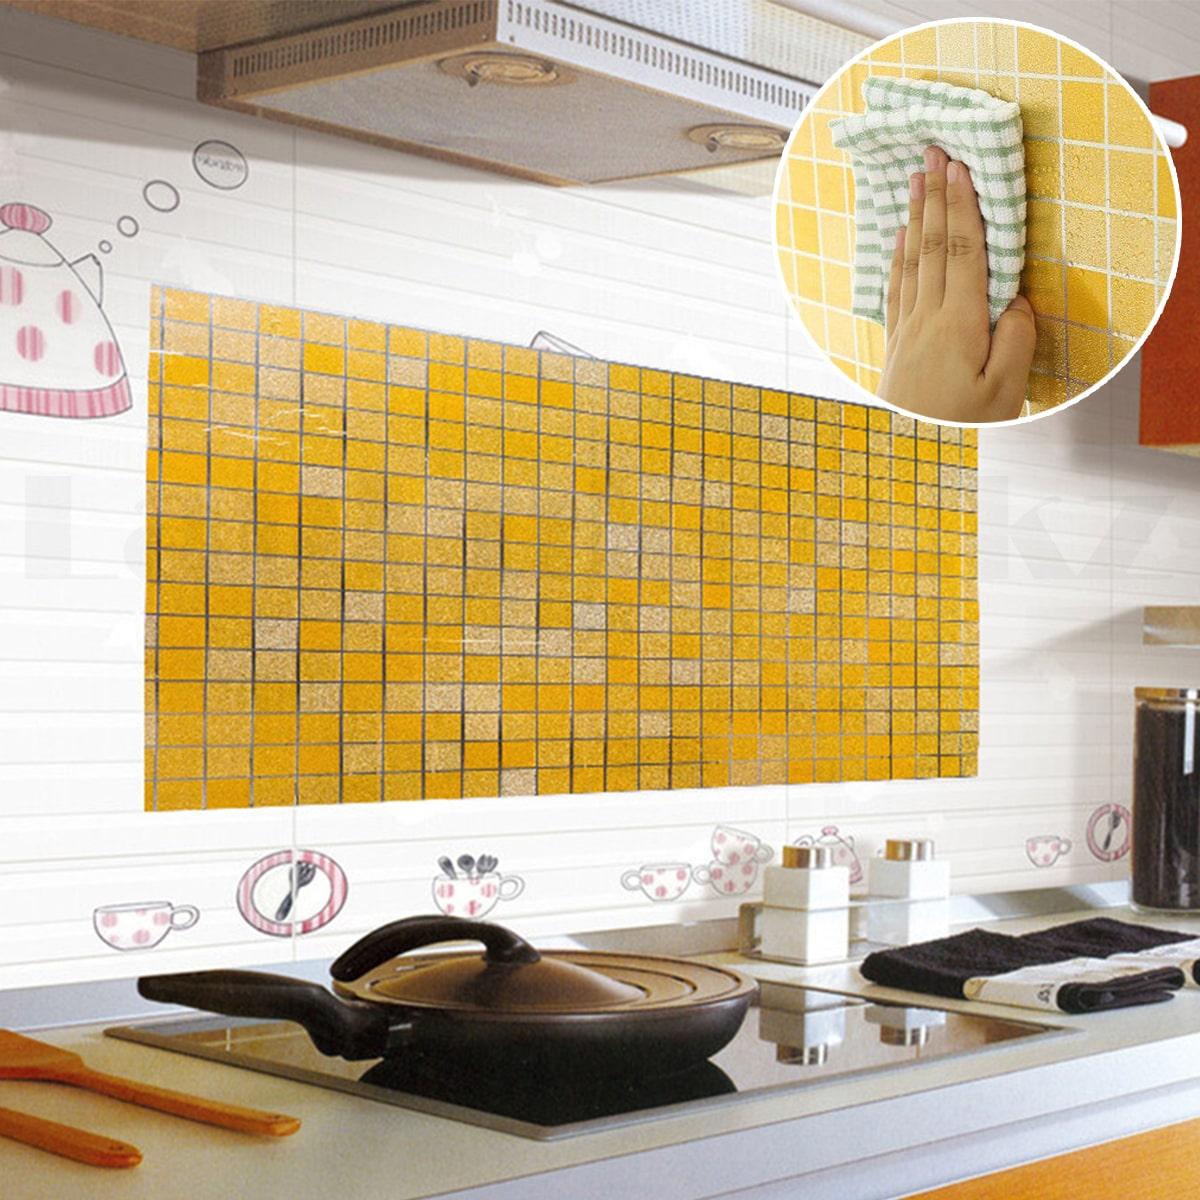 Кухонная наклейка на кафельную плитку 90х60 в желтых оттенках